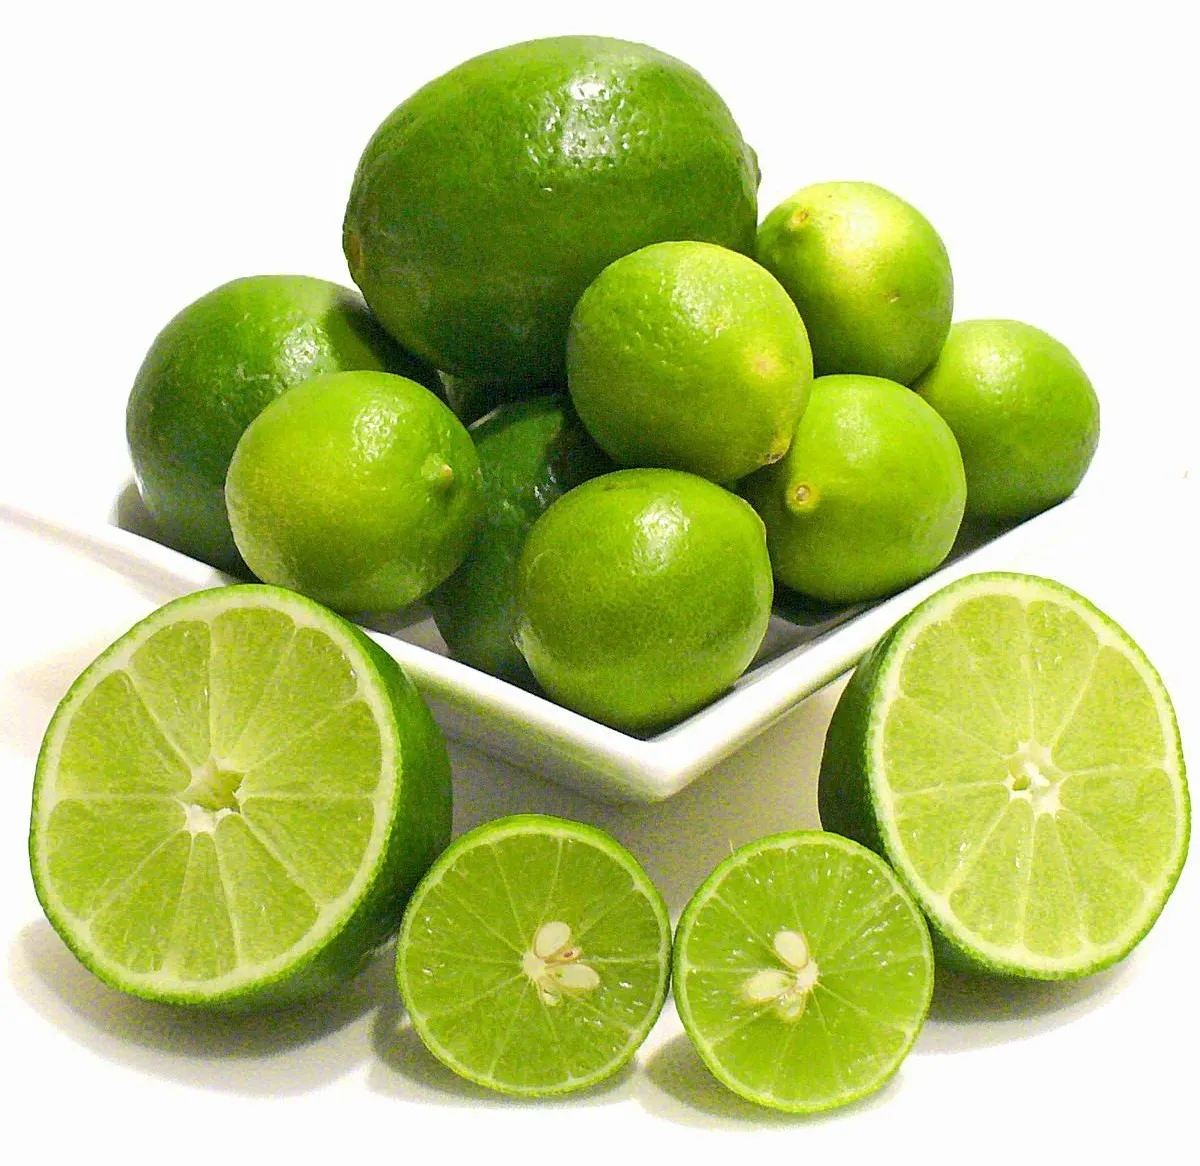 Lime de limão verde sem sementes do vietnã, preço barato de mudas frescas em atacado